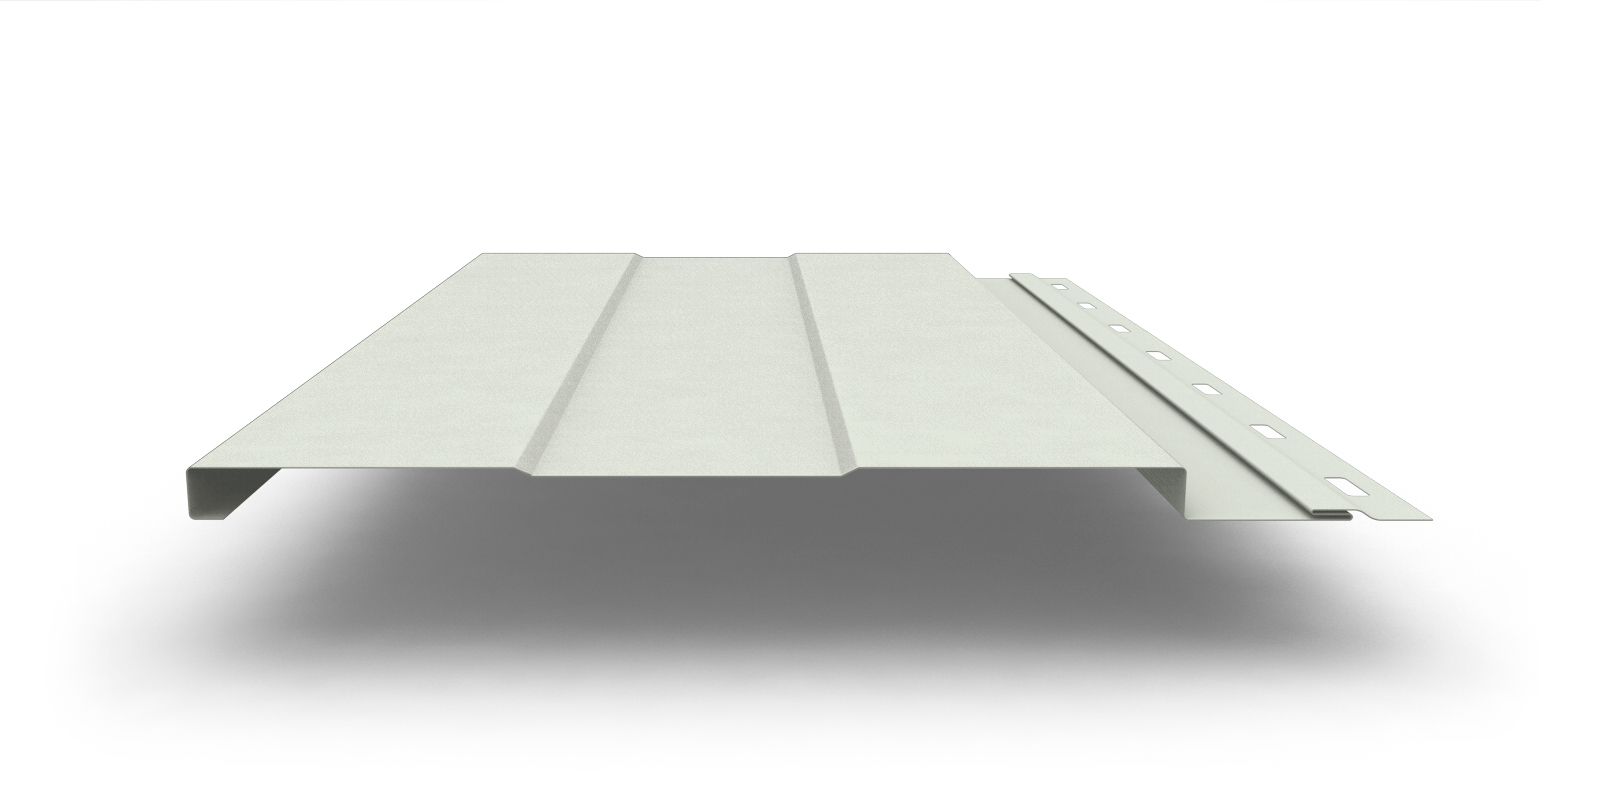 Металлический сайдинг Фасадная панель с покрытием Полиэстер, 0,45 мм, изображение, фото | Сталь ТД